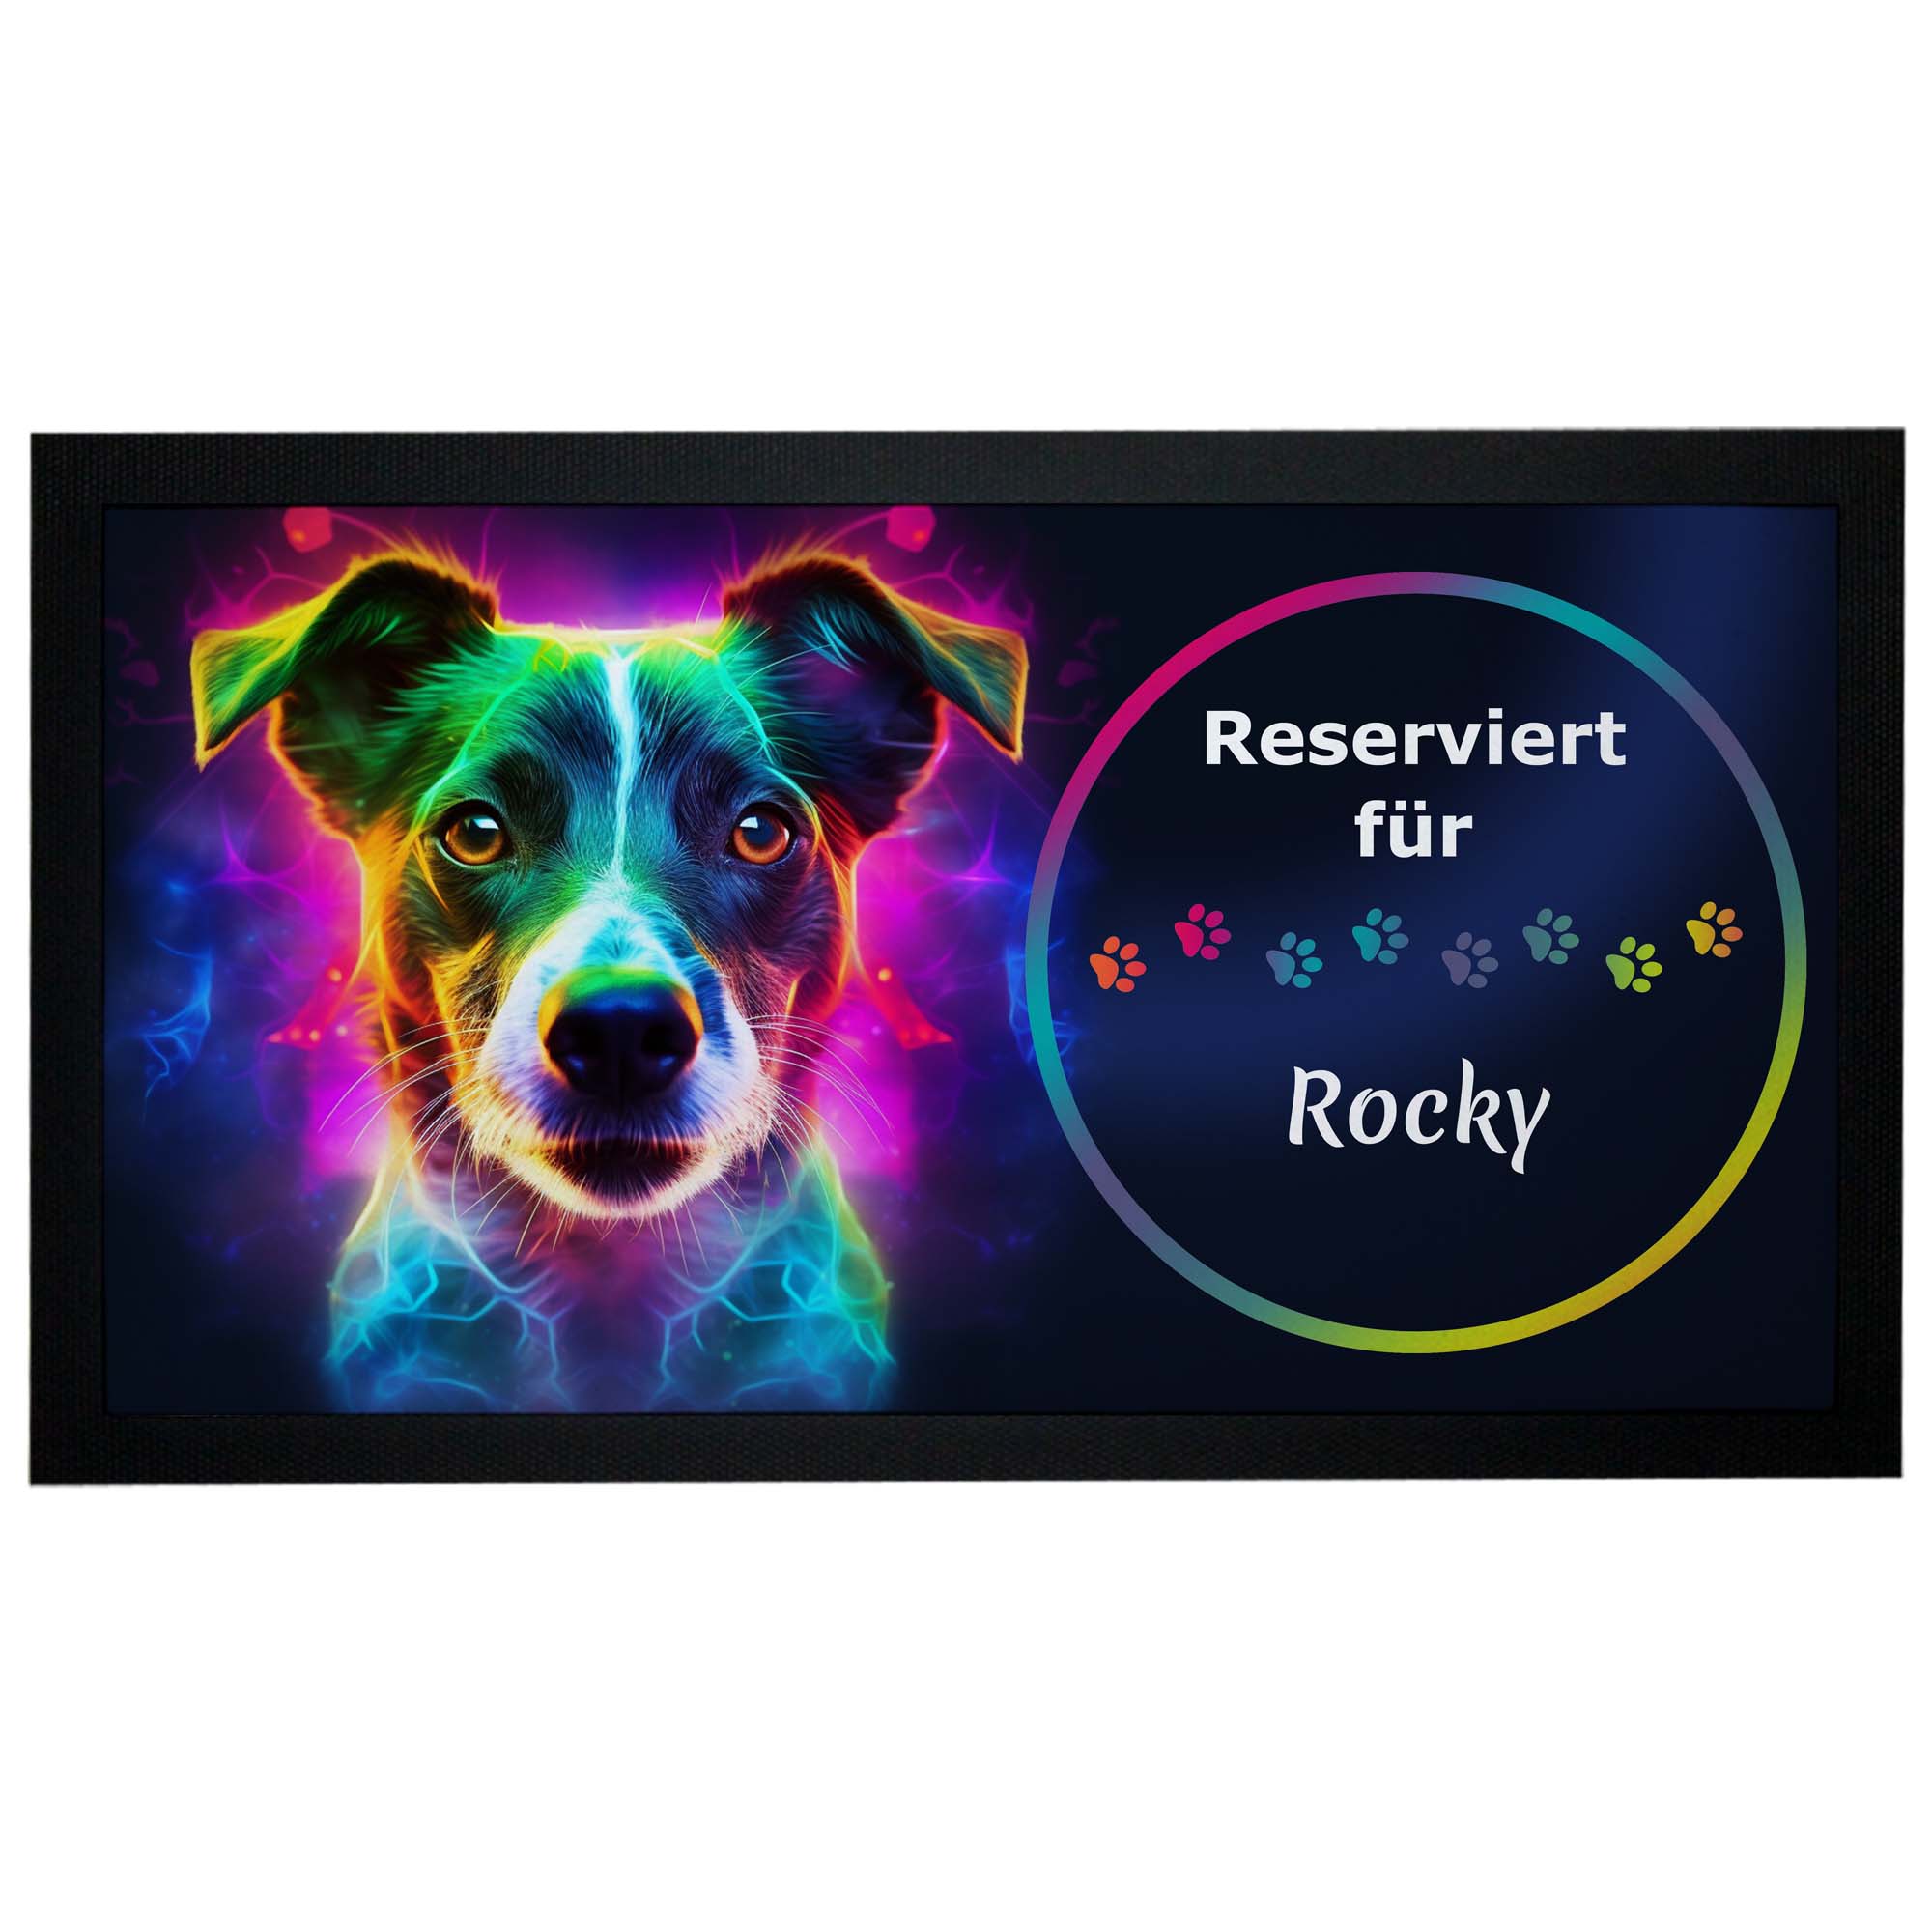 Napfunterlage Jack Russell Terrier mit Name Neon-Design